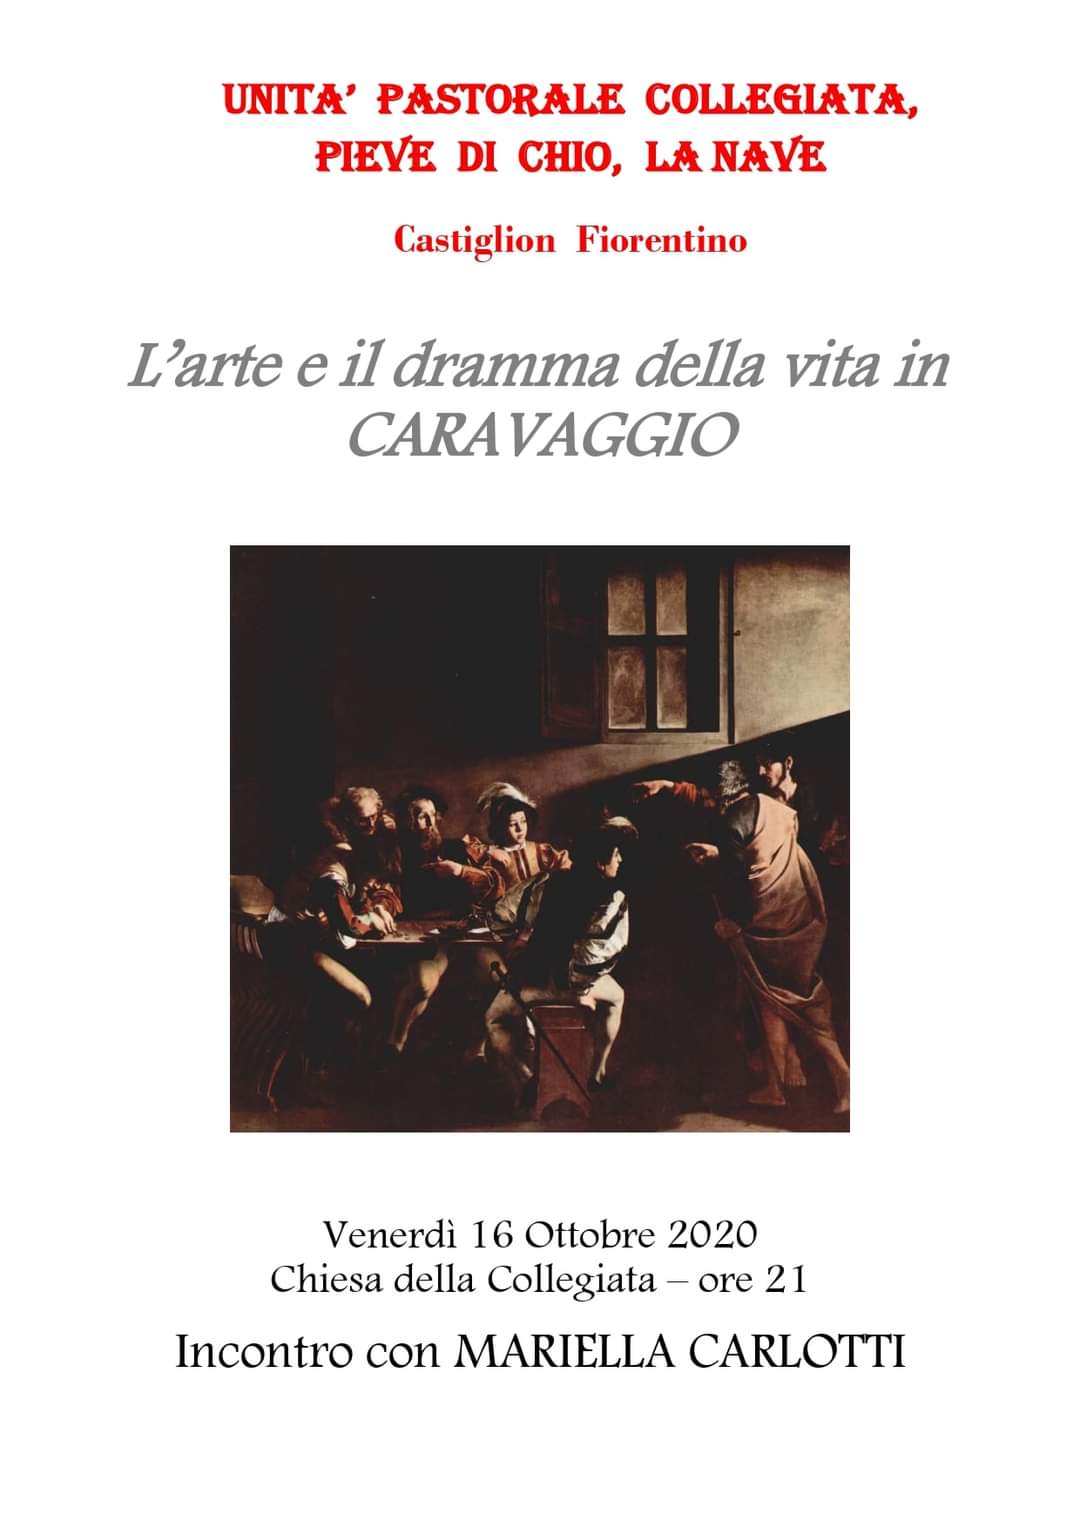 “L’arte e il dramma della vita in Caravaggio”, se ne parlerà venerdì sera ore 21.00 Chiesa della Collegiata.